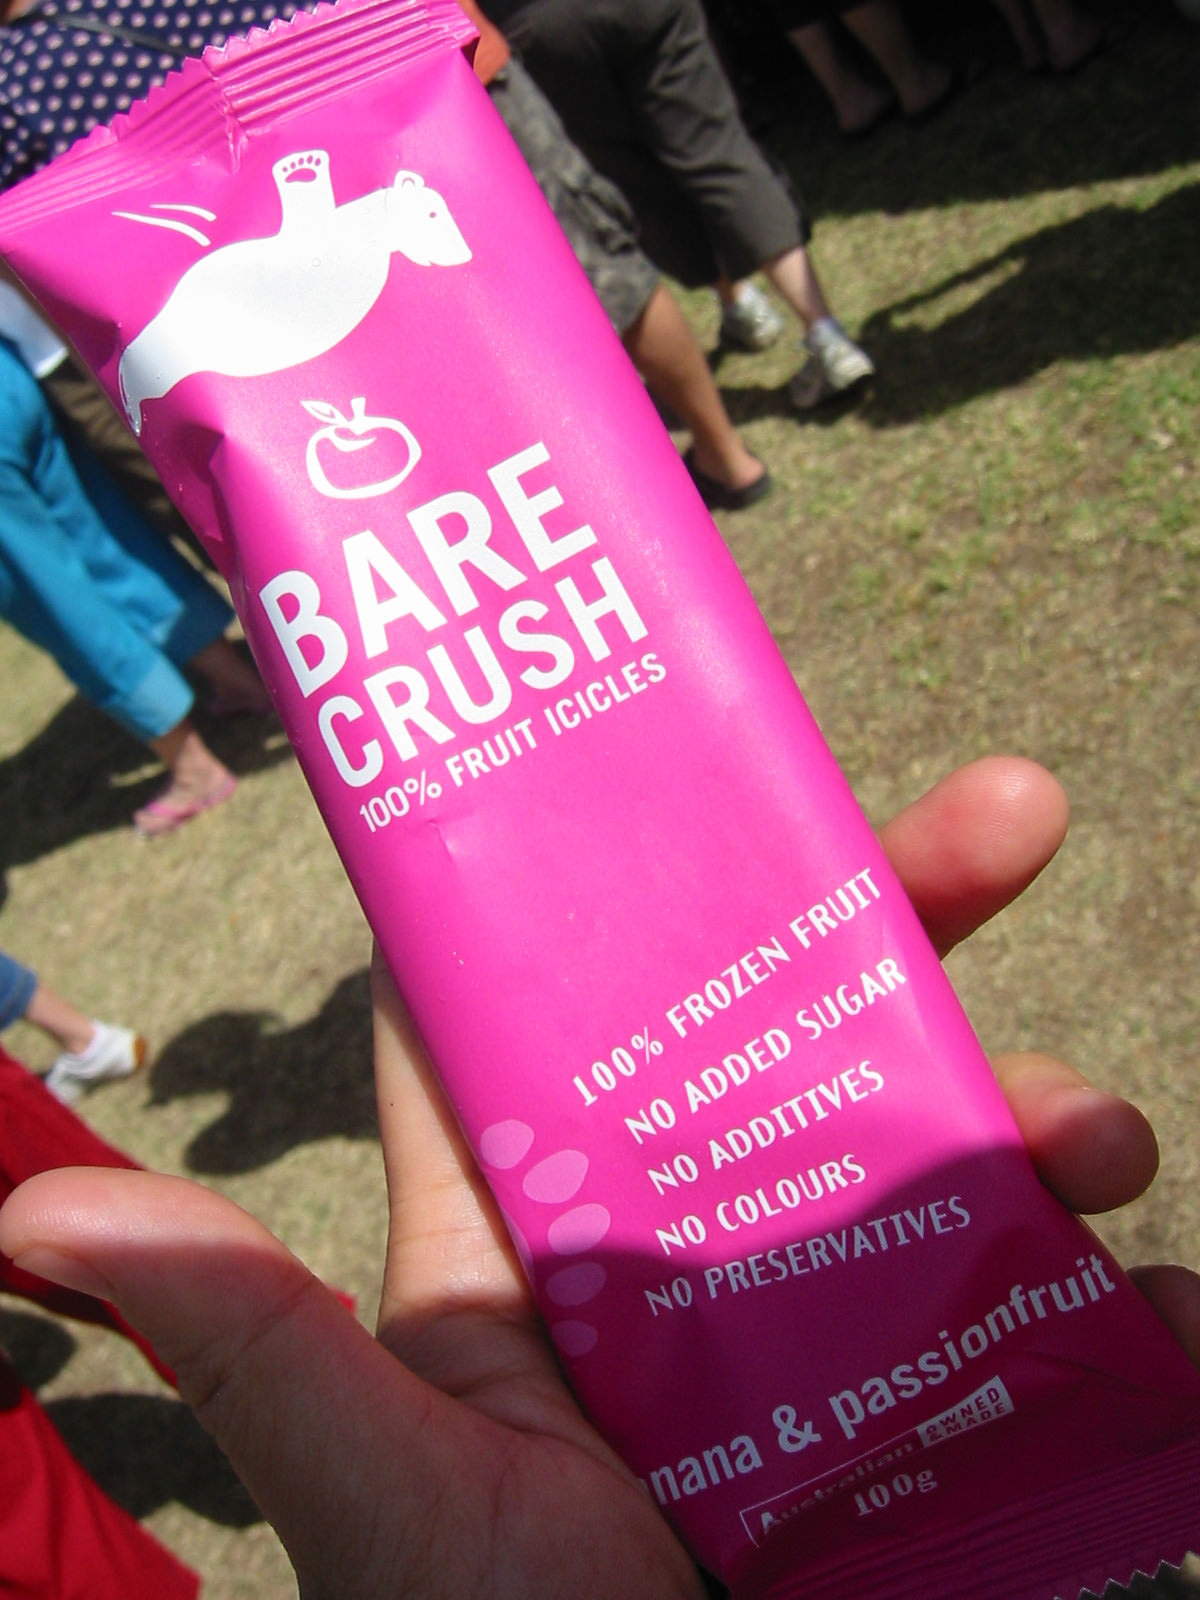 Bare Crush